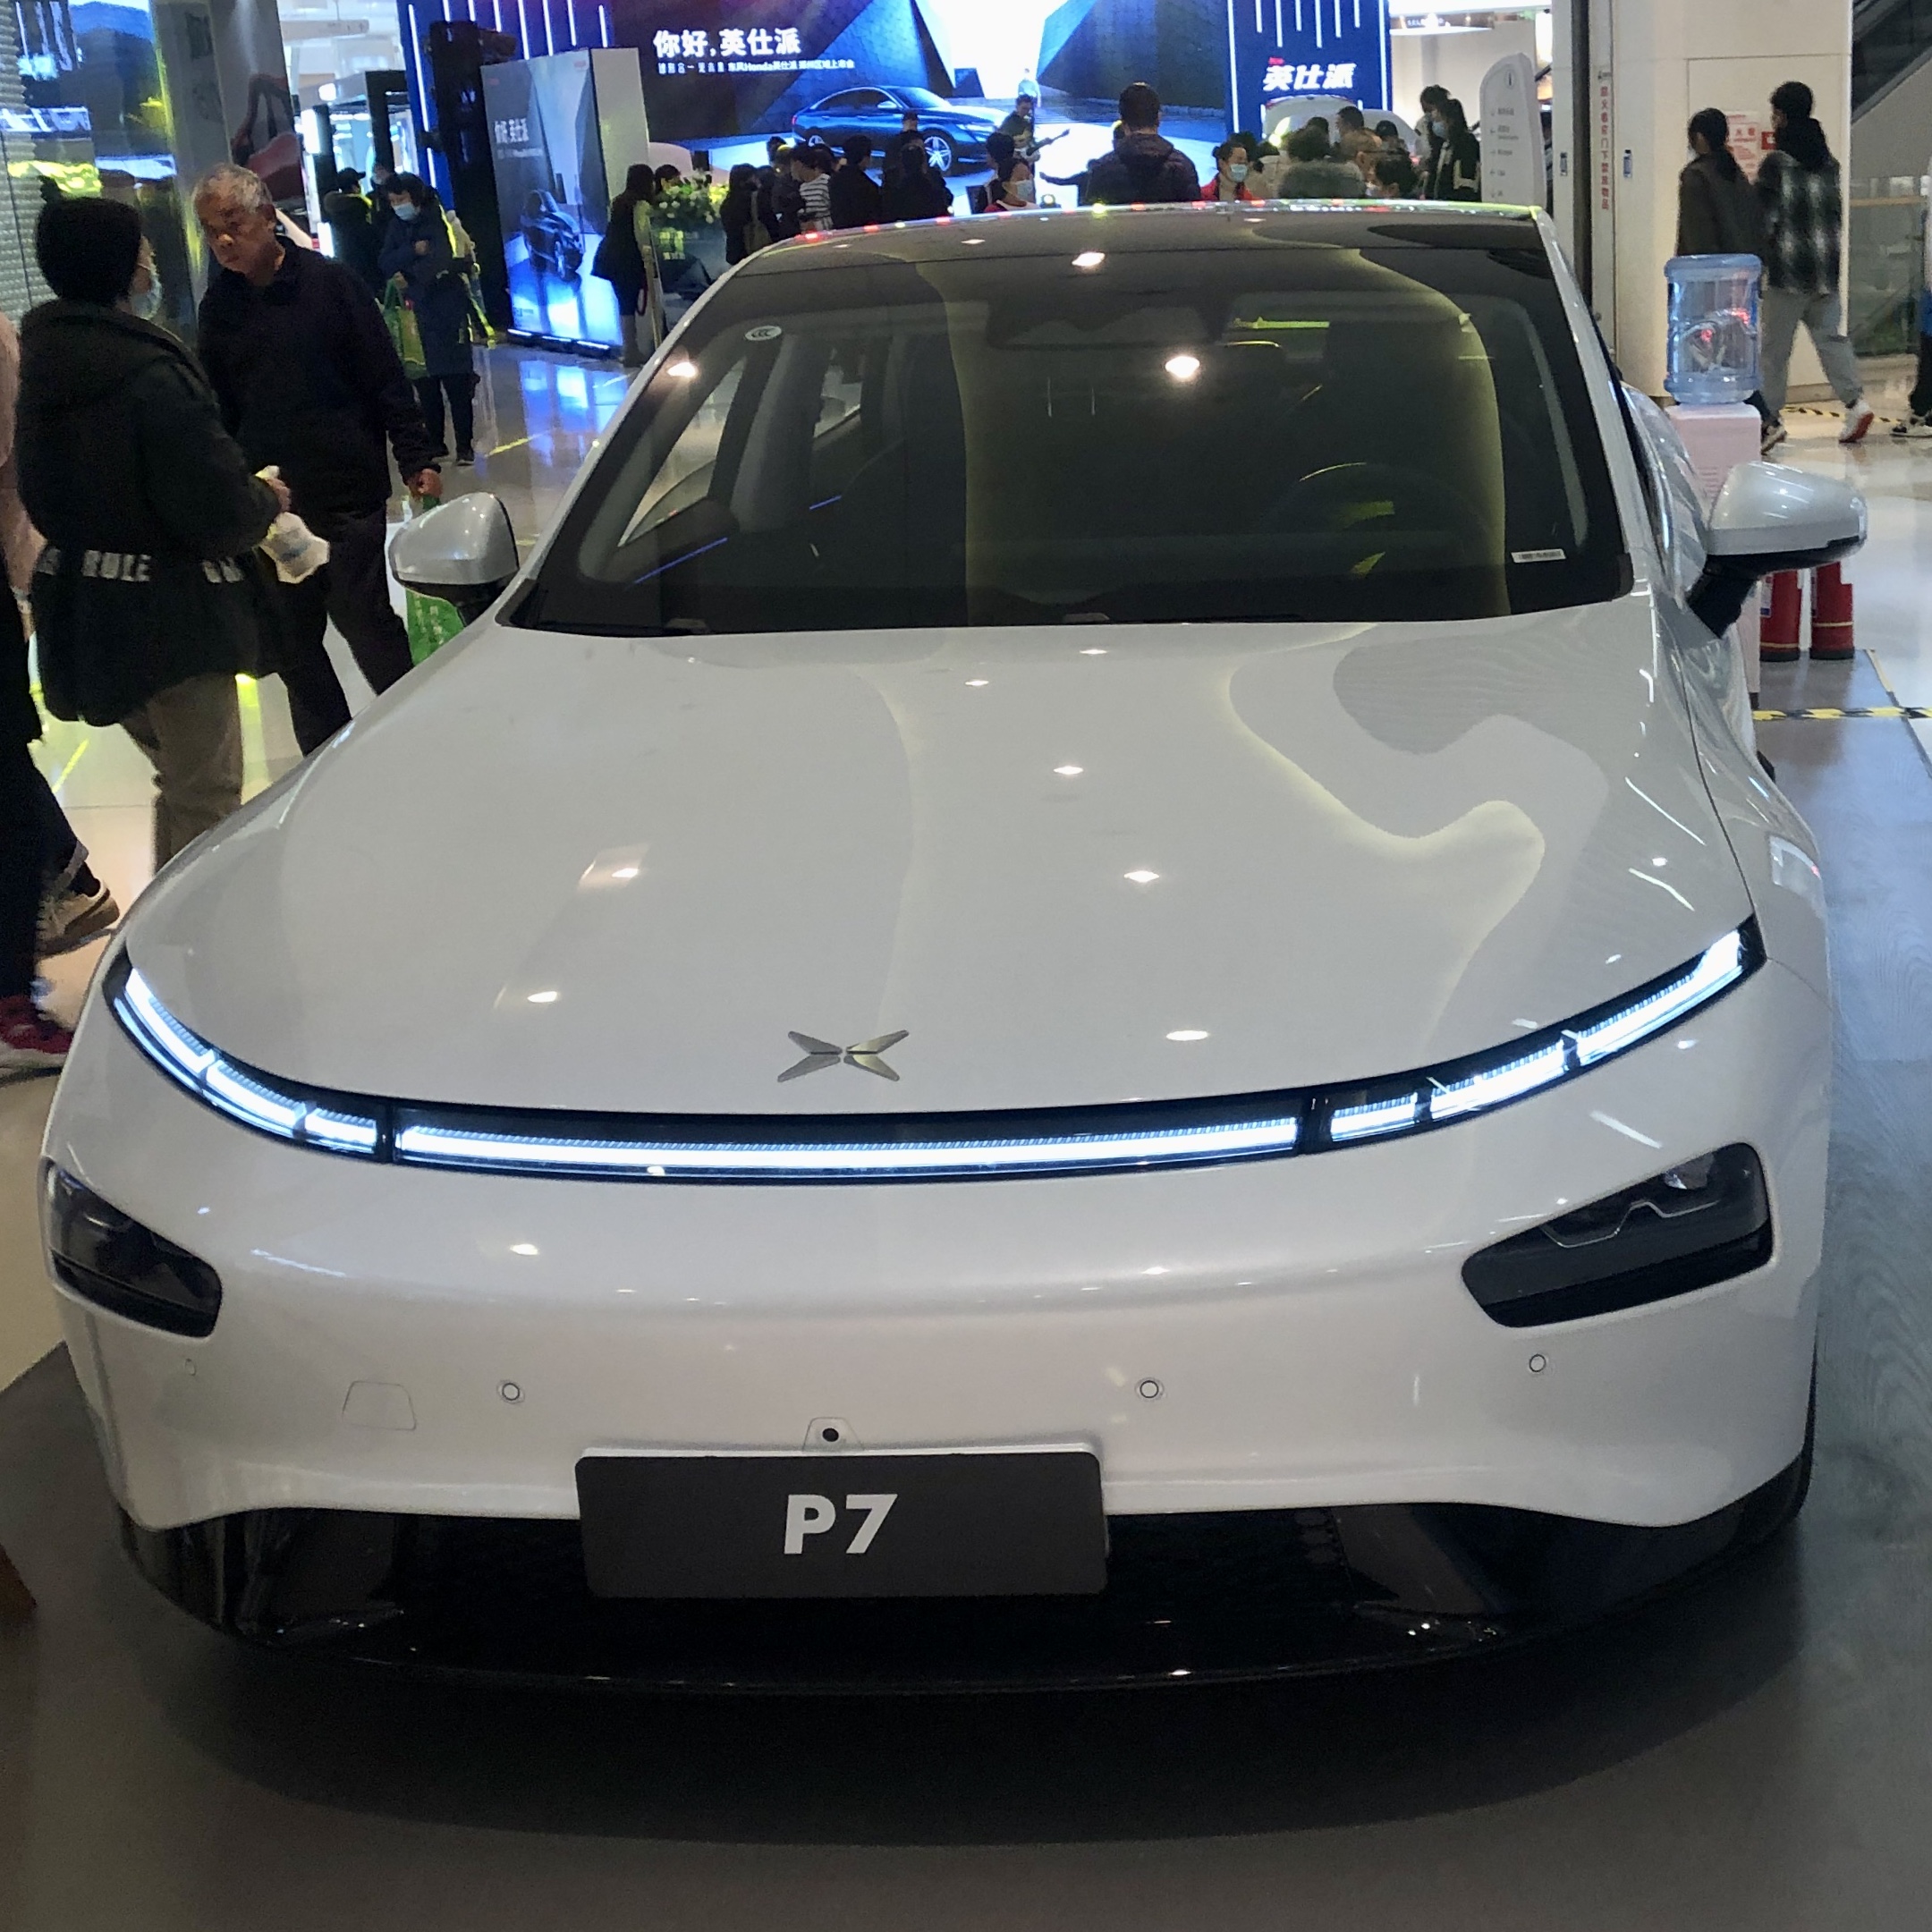 中国在电动车等领域不断出现新创厂商